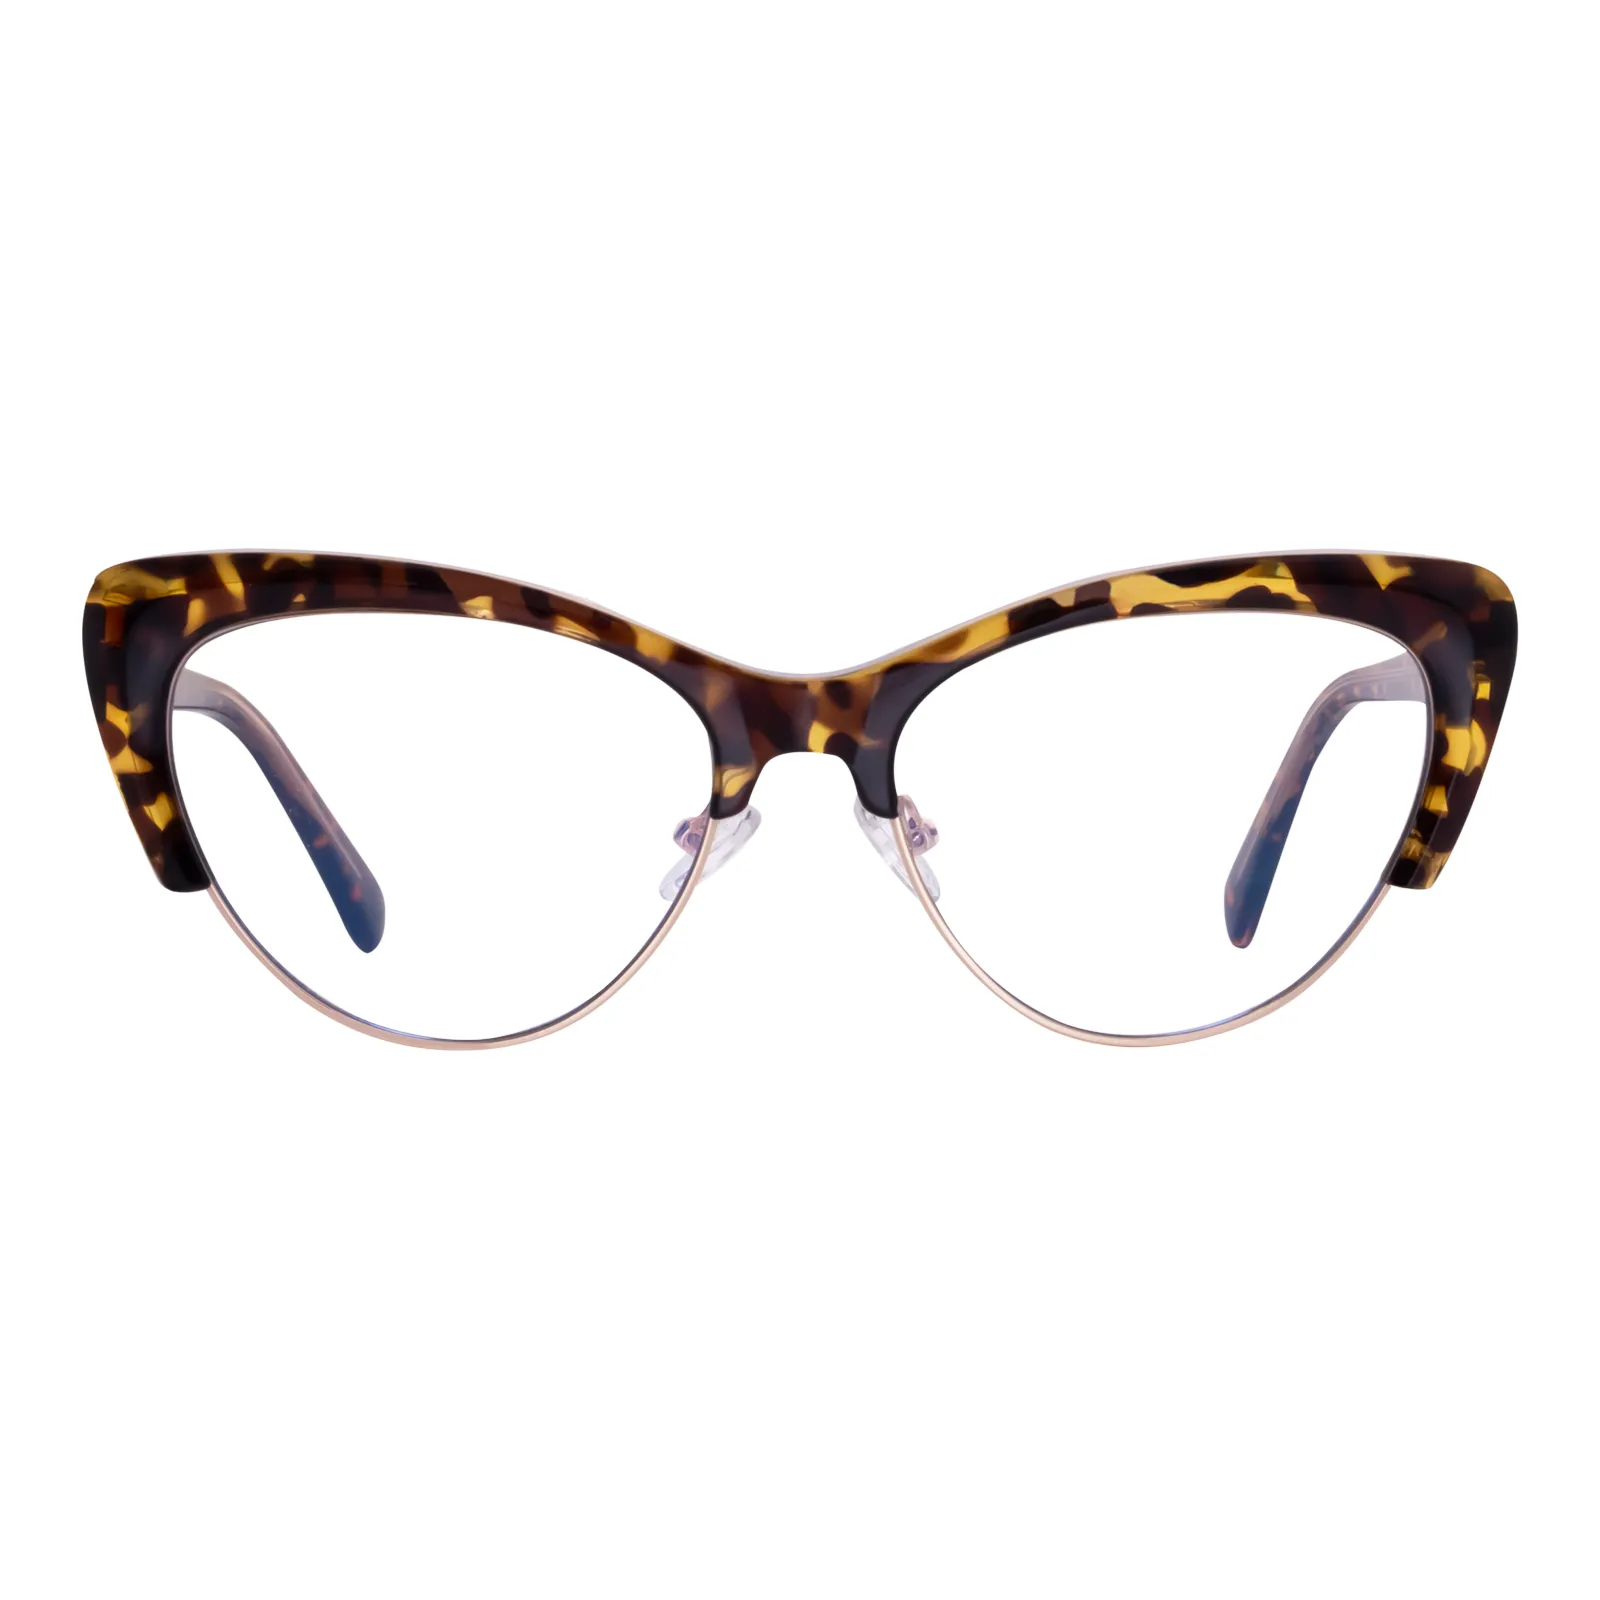 Christine - Cat-Eye Tortoisehell Glasses for Women